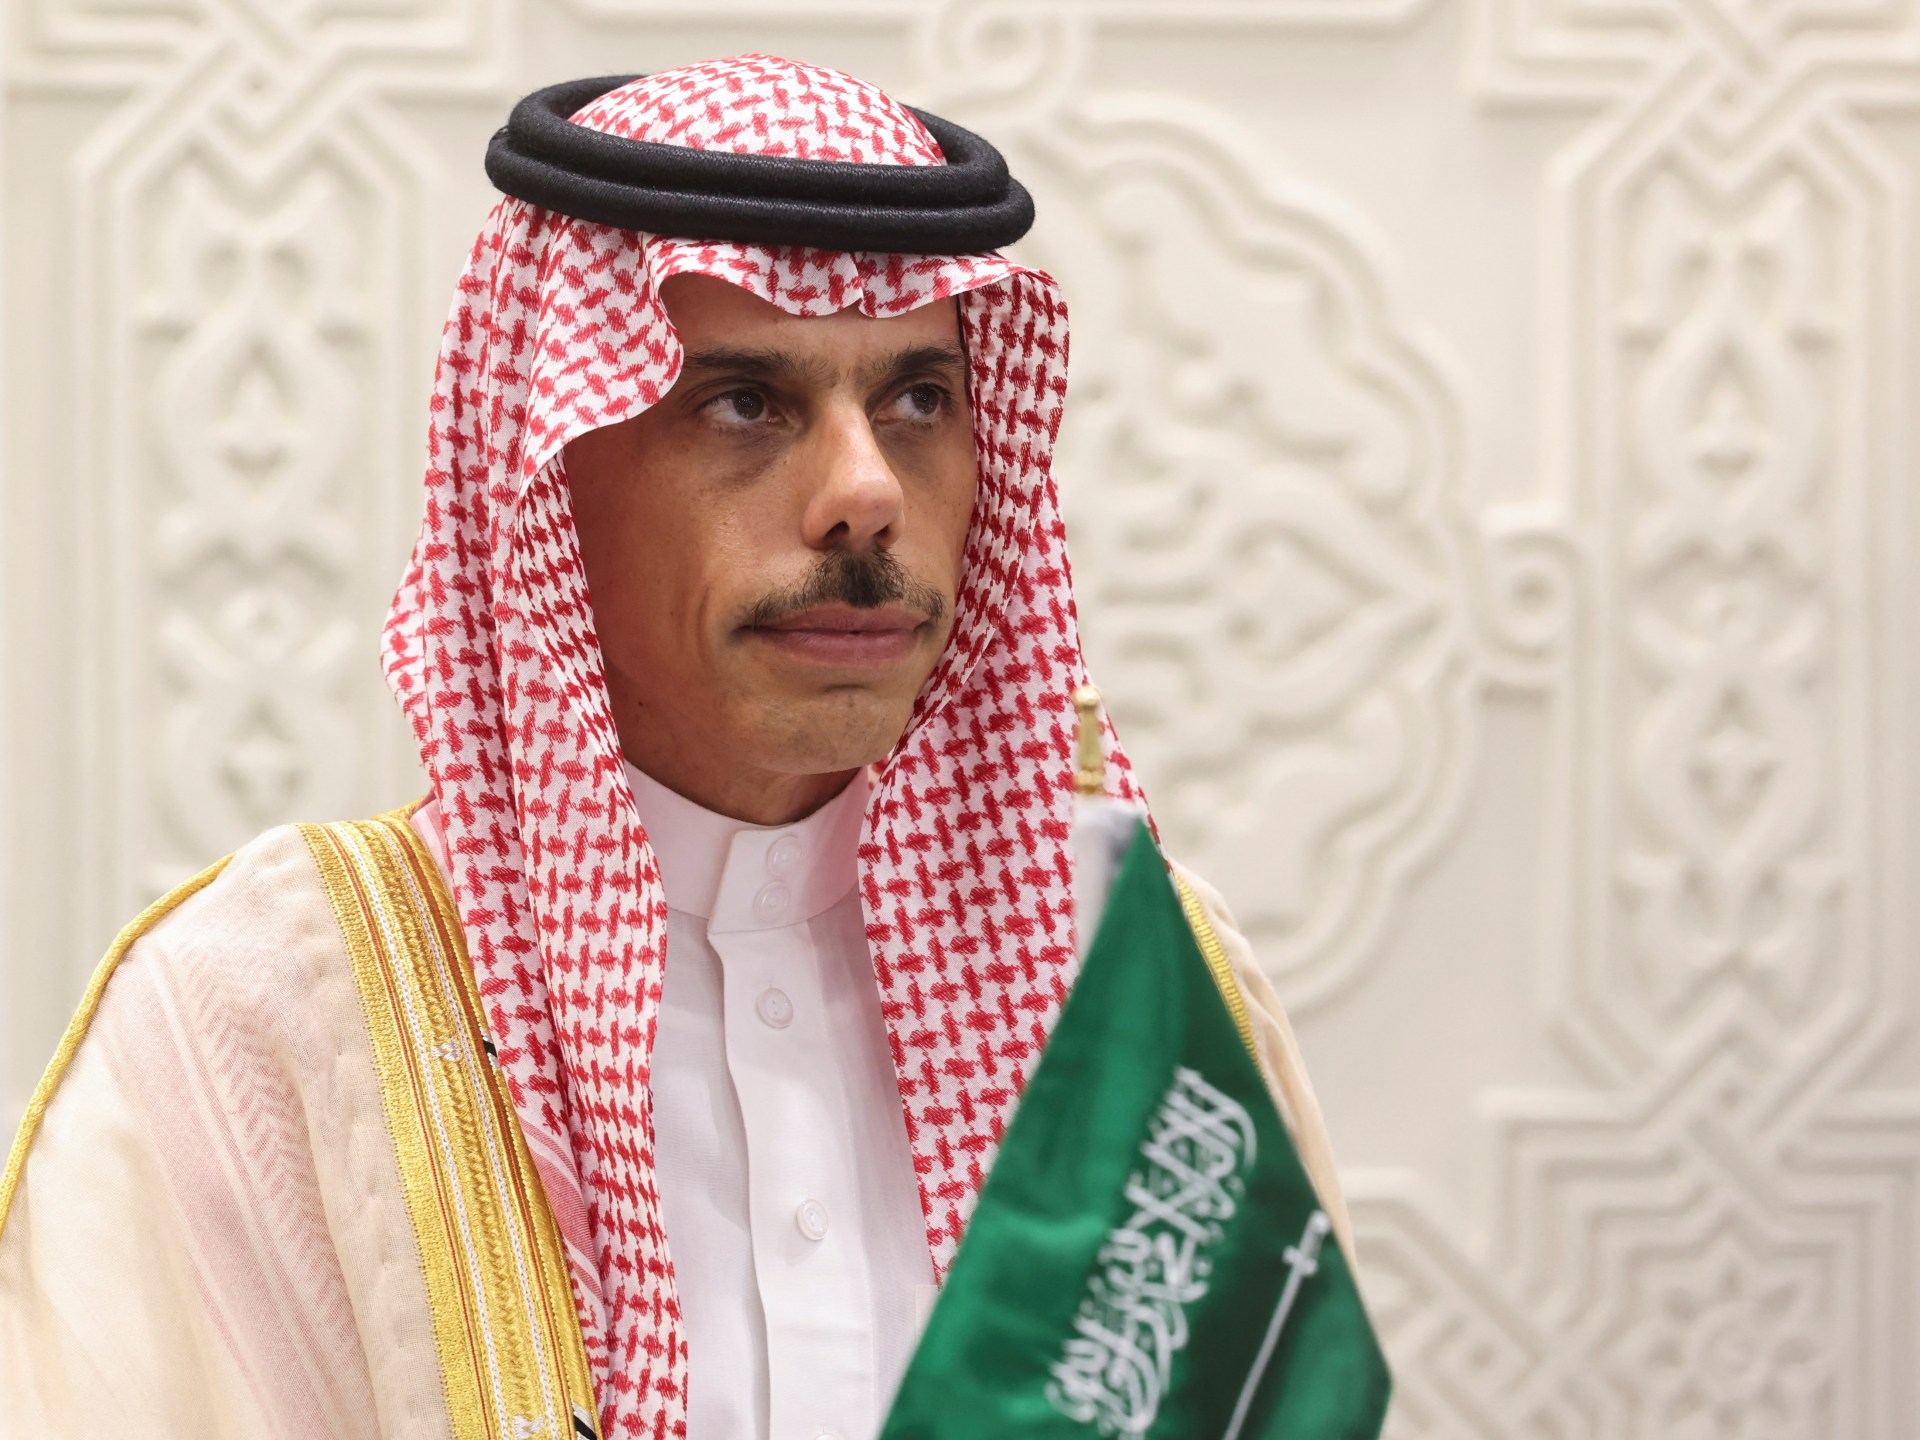 السعودية تستضيف اجتماعا لوزراء خارجية عرب للتشاور بشأن غزة | أخبار – البوكس نيوز